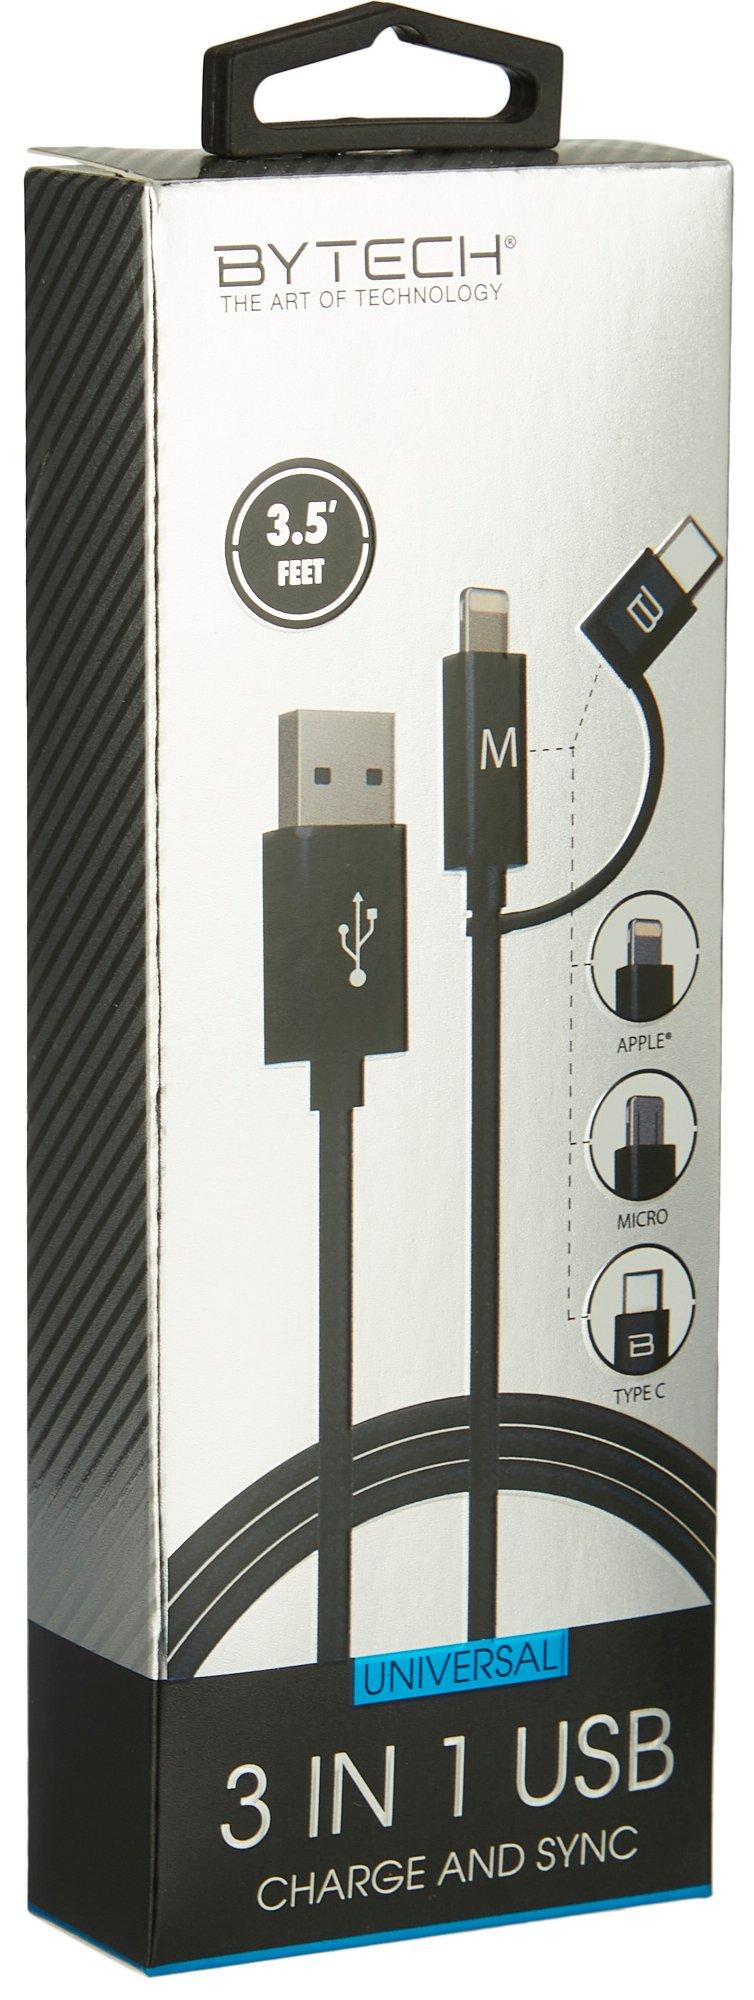 Bytech 3 In 1 Universal USB